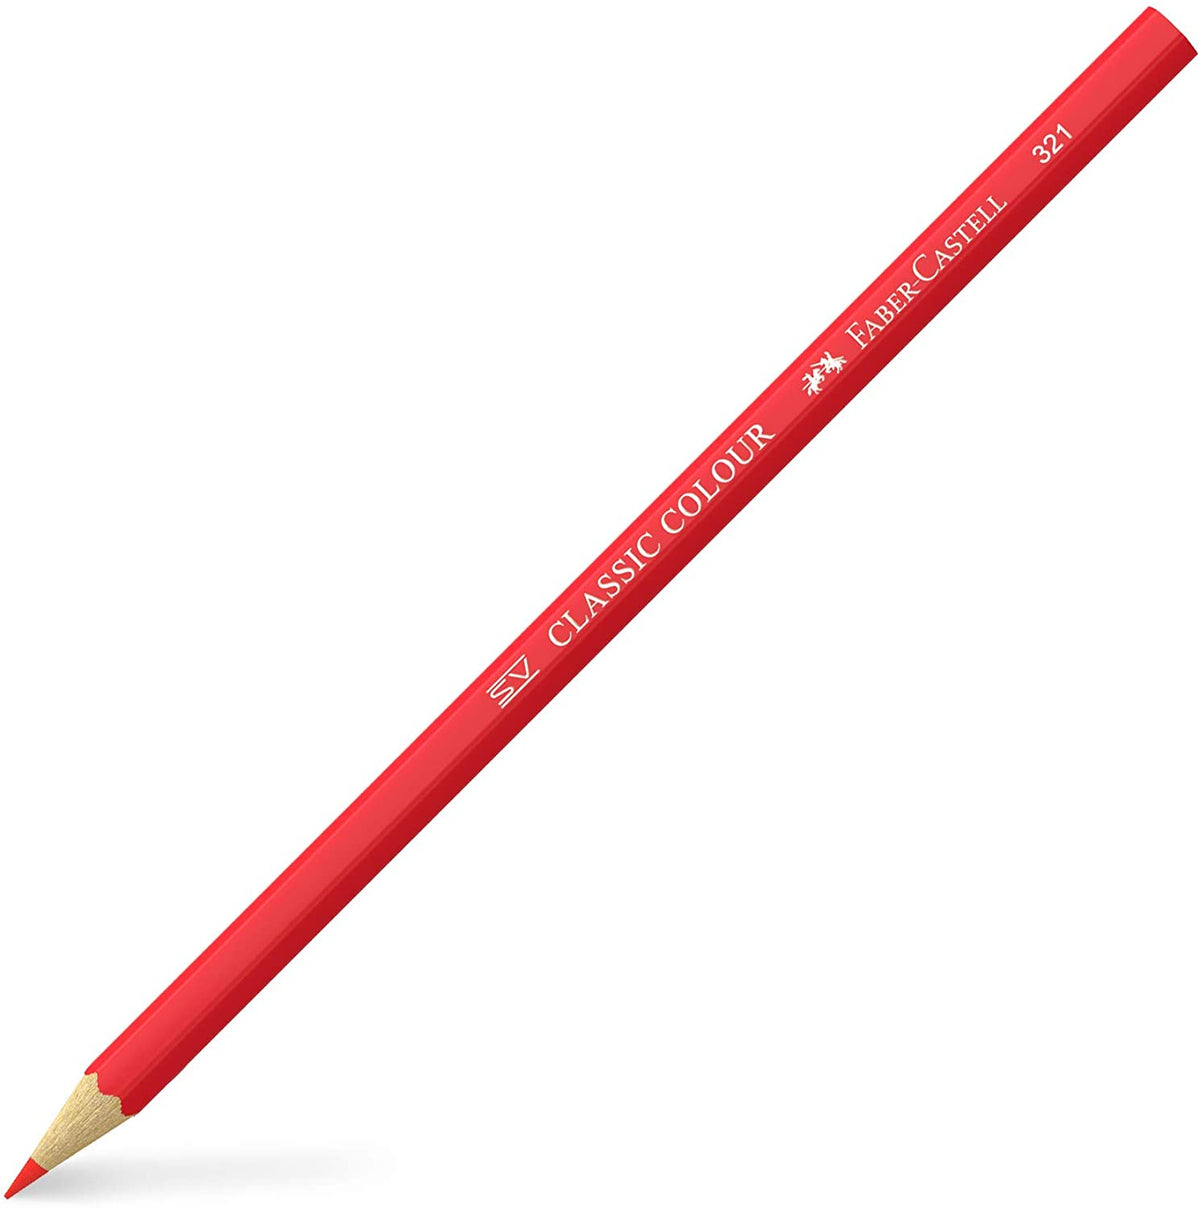 Faber - Castell Classic Pencil Colors Set